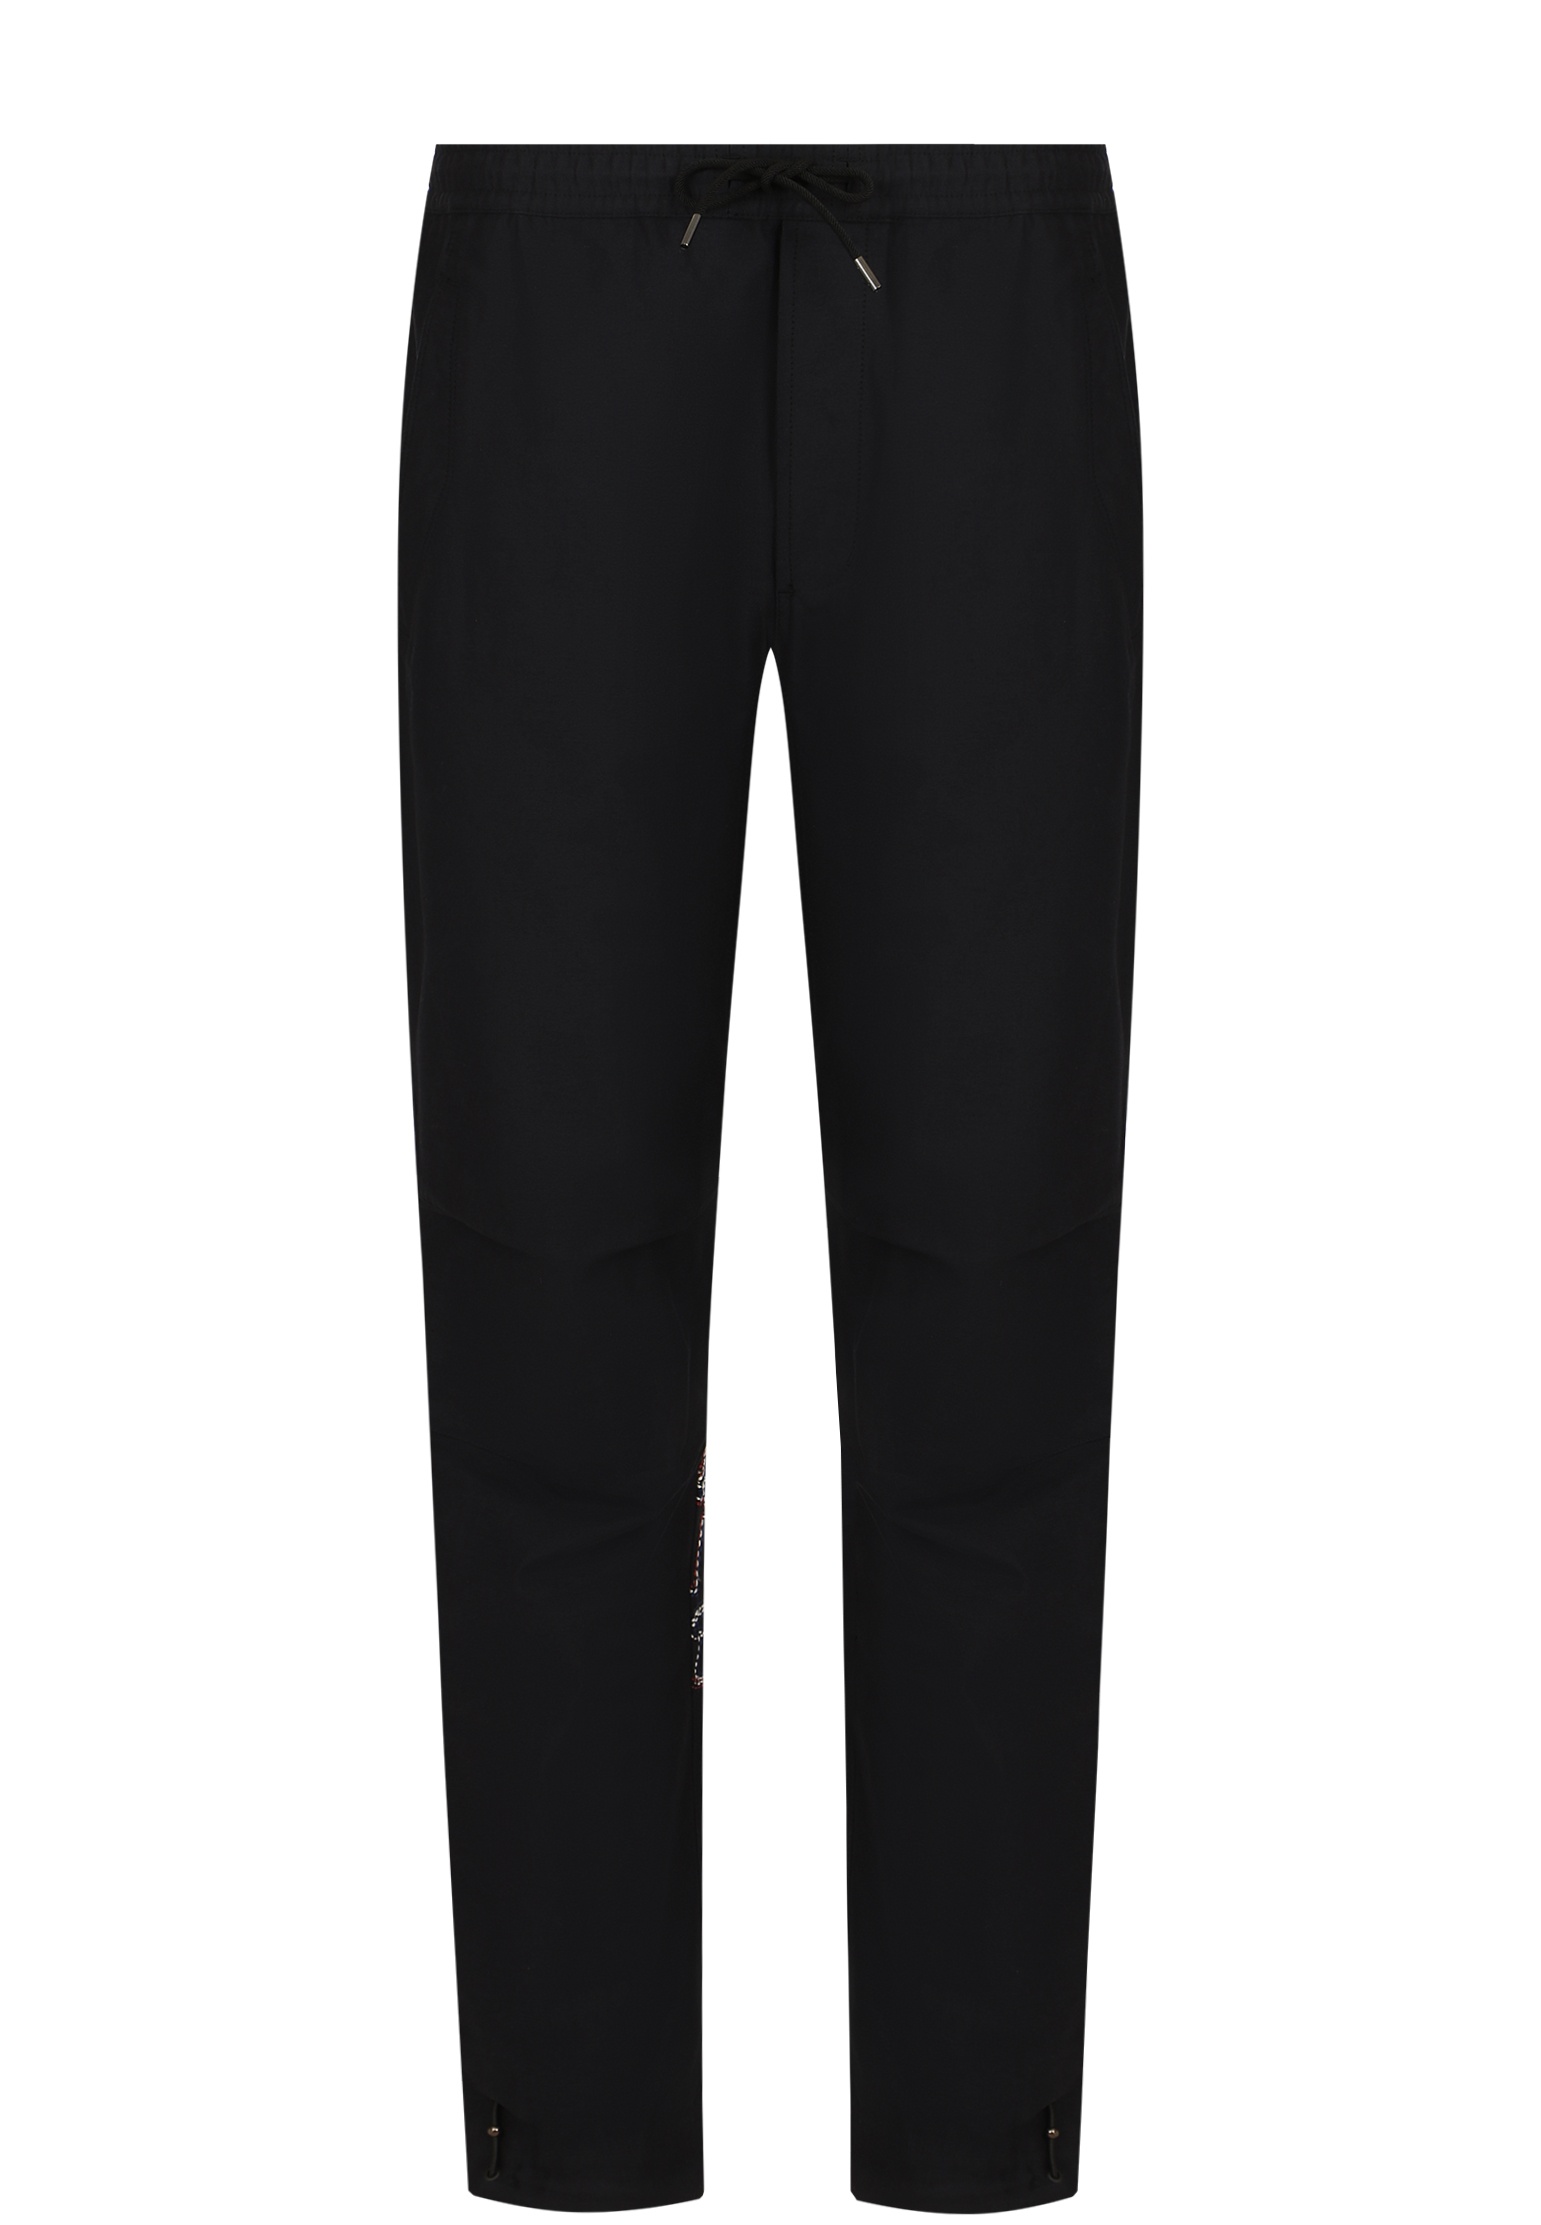 Спортивные брюки мужские MAHARISHI 139281 черные M